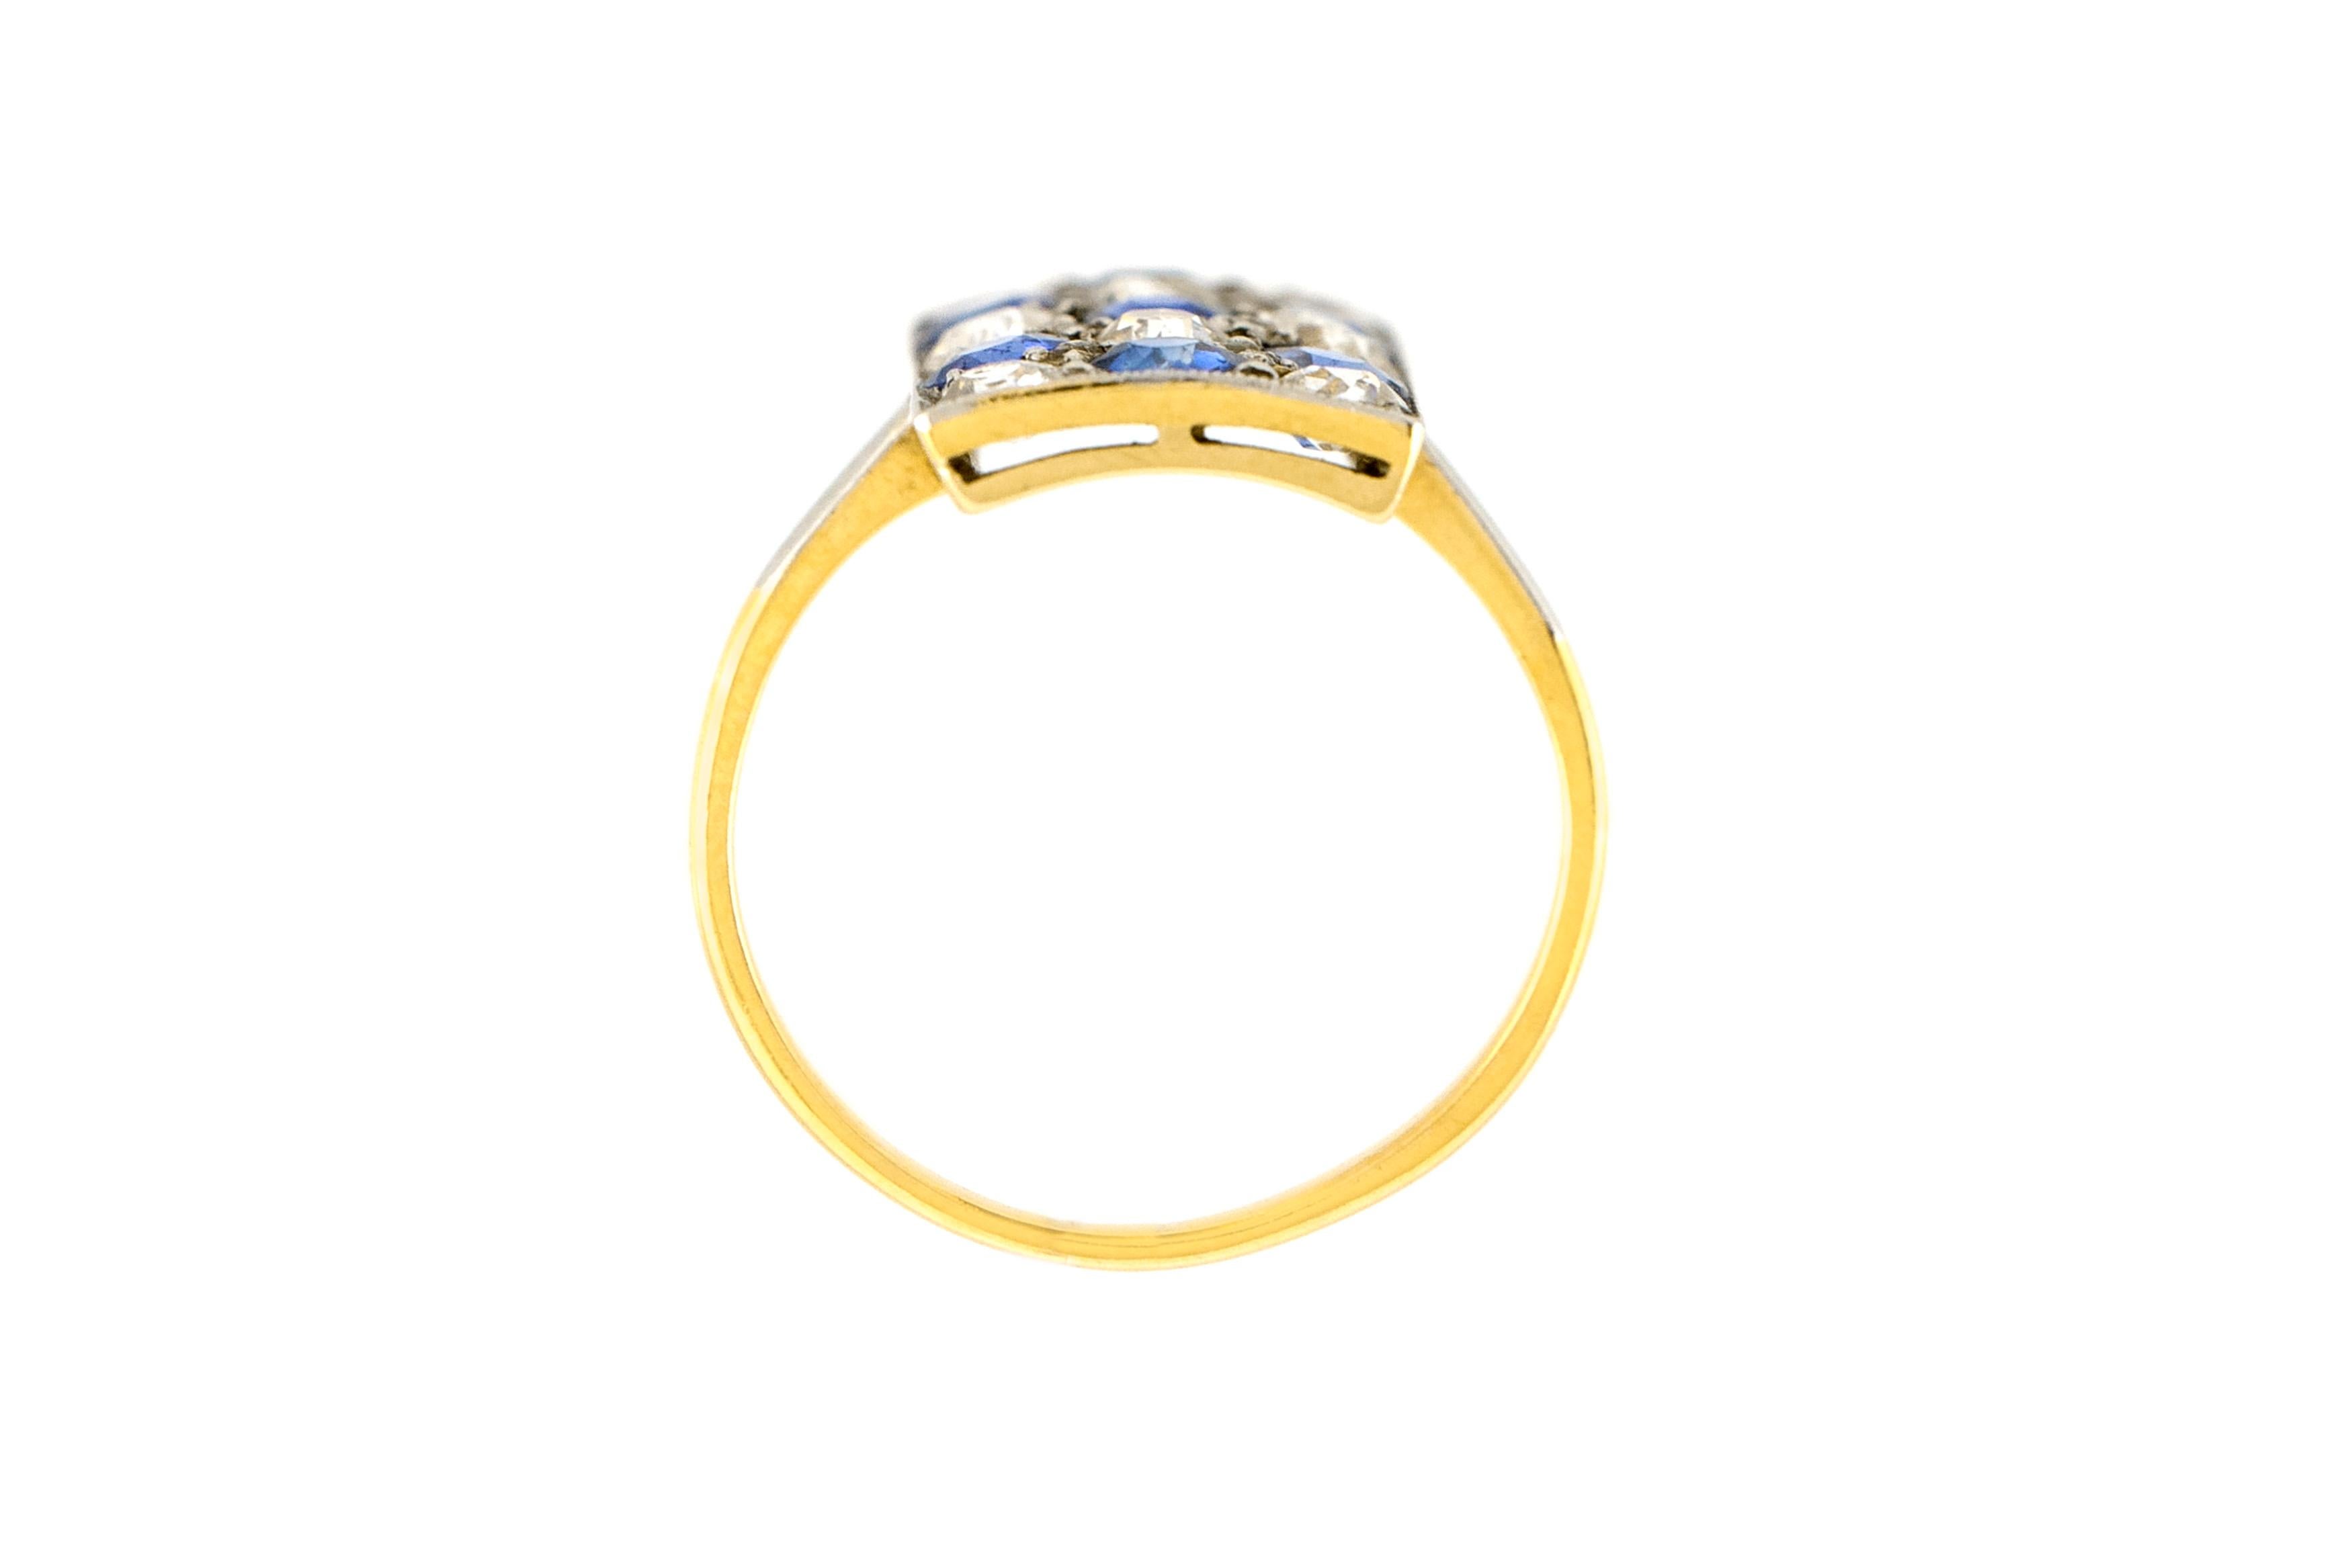 Der Ring ist fein in18k Gelbgold mit Saphiren mit einem Gesamtgewicht von etwa 1,40 Karat und Diamanten mit einem Gesamtgewicht von etwa 1,50 Karat gefertigt.